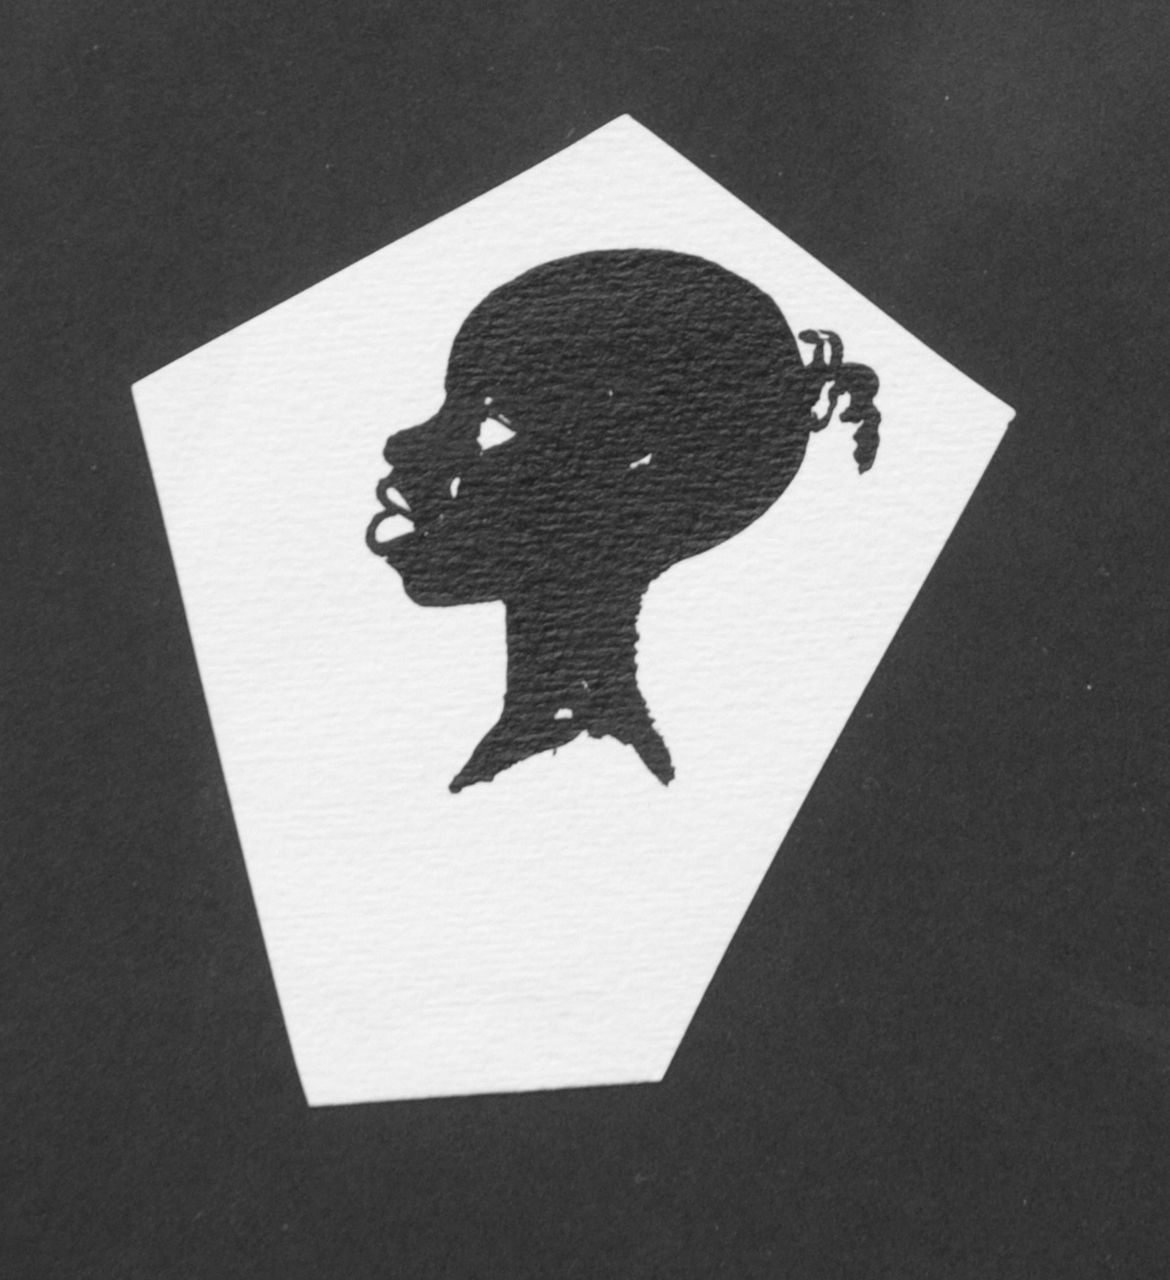 Oranje-Nassau (Prinses Beatrix) B.W.A. van | Beatrix Wilhelmina Armgard van Oranje-Nassau (Prinses Beatrix), Kopje en profil, potlood en Oost-Indische inkt op papier 9,0 x 8,1 cm, te dateren augustus 1960